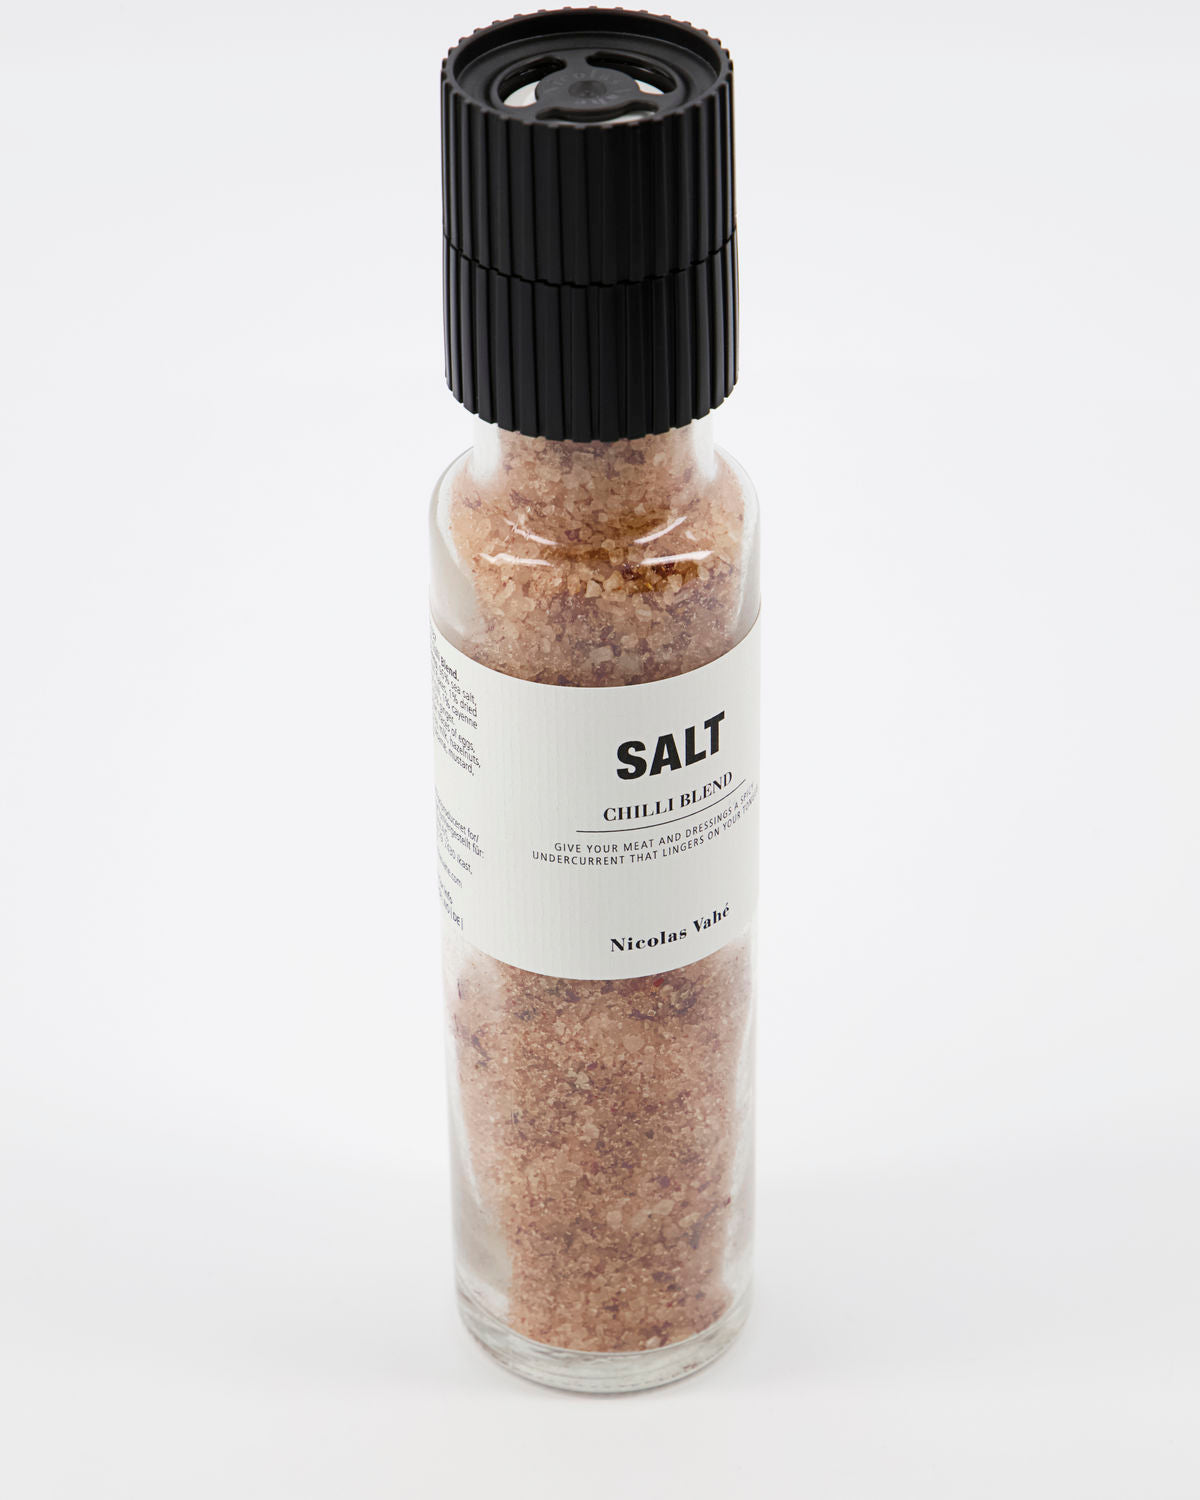 Salt, Chilli blend Café Society